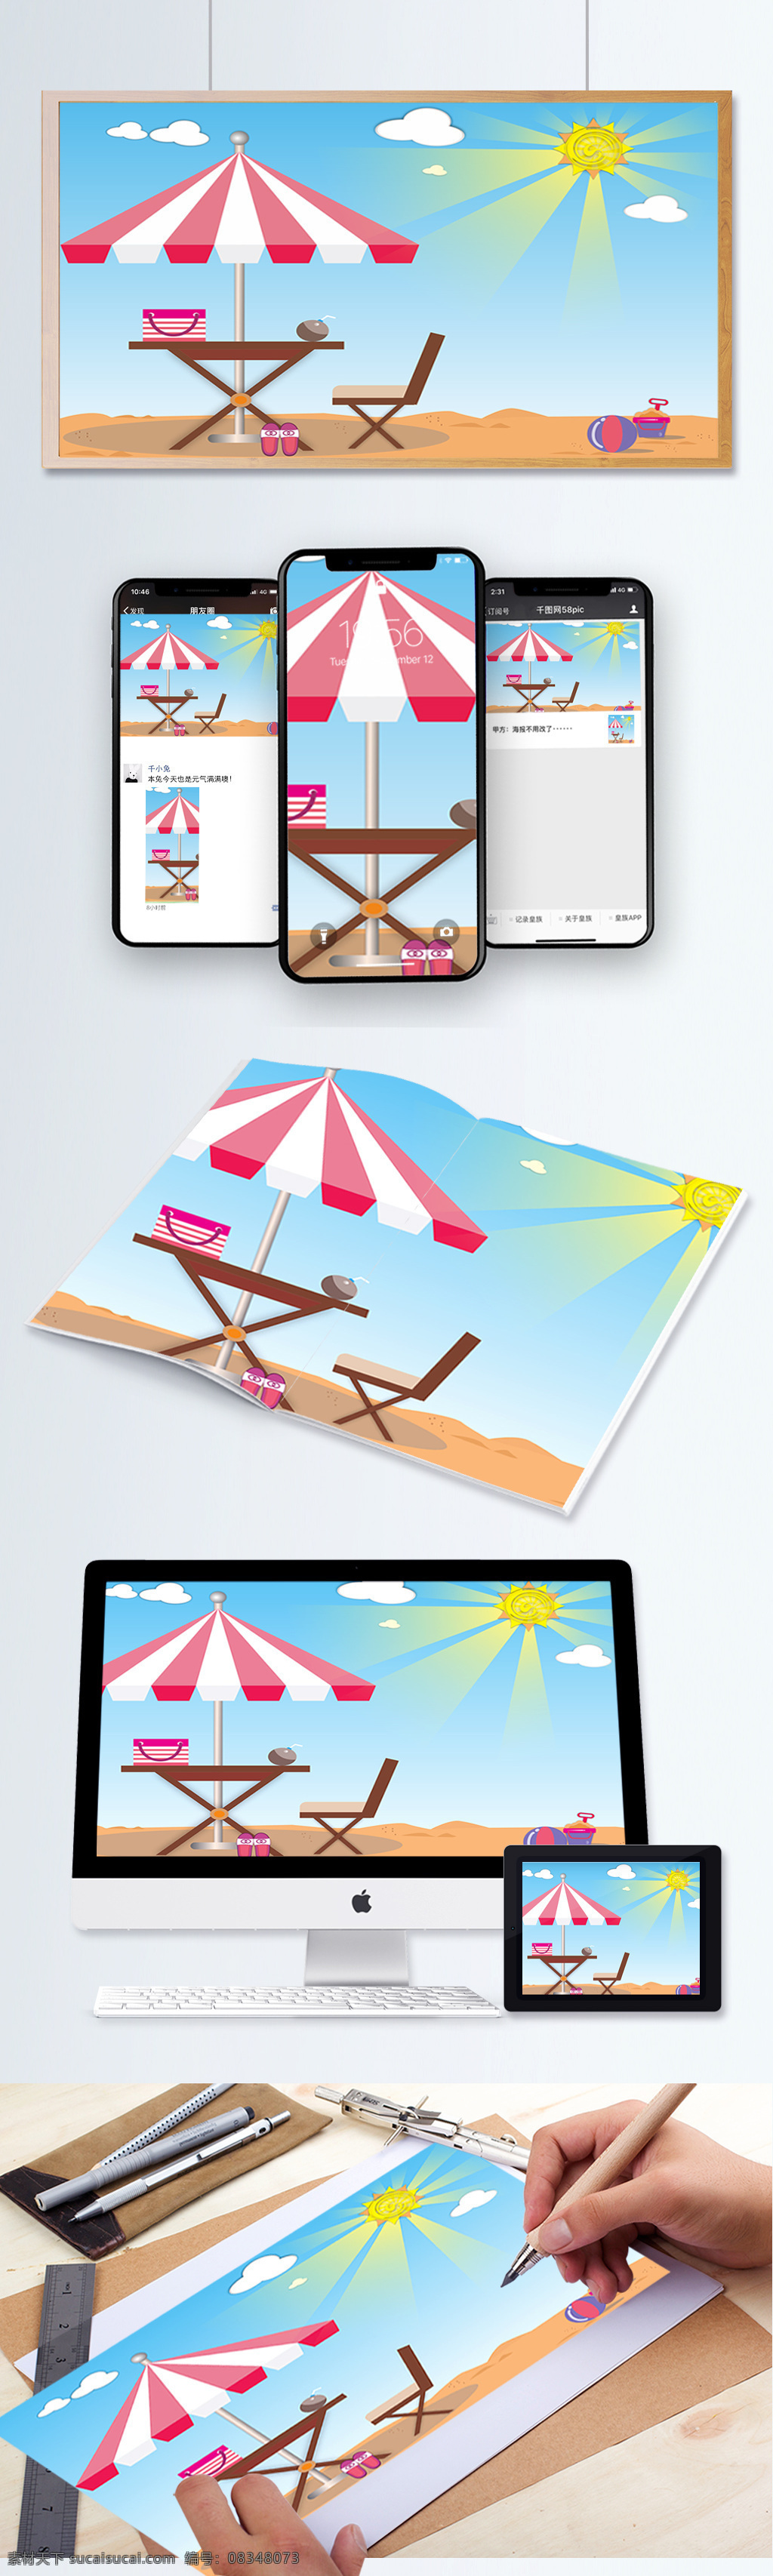 美丽 阳光 沙滩 矢量图 太阳伞 沙滩椅 沙滩桌 拖鞋 背包 白云 太阳 沙滩球